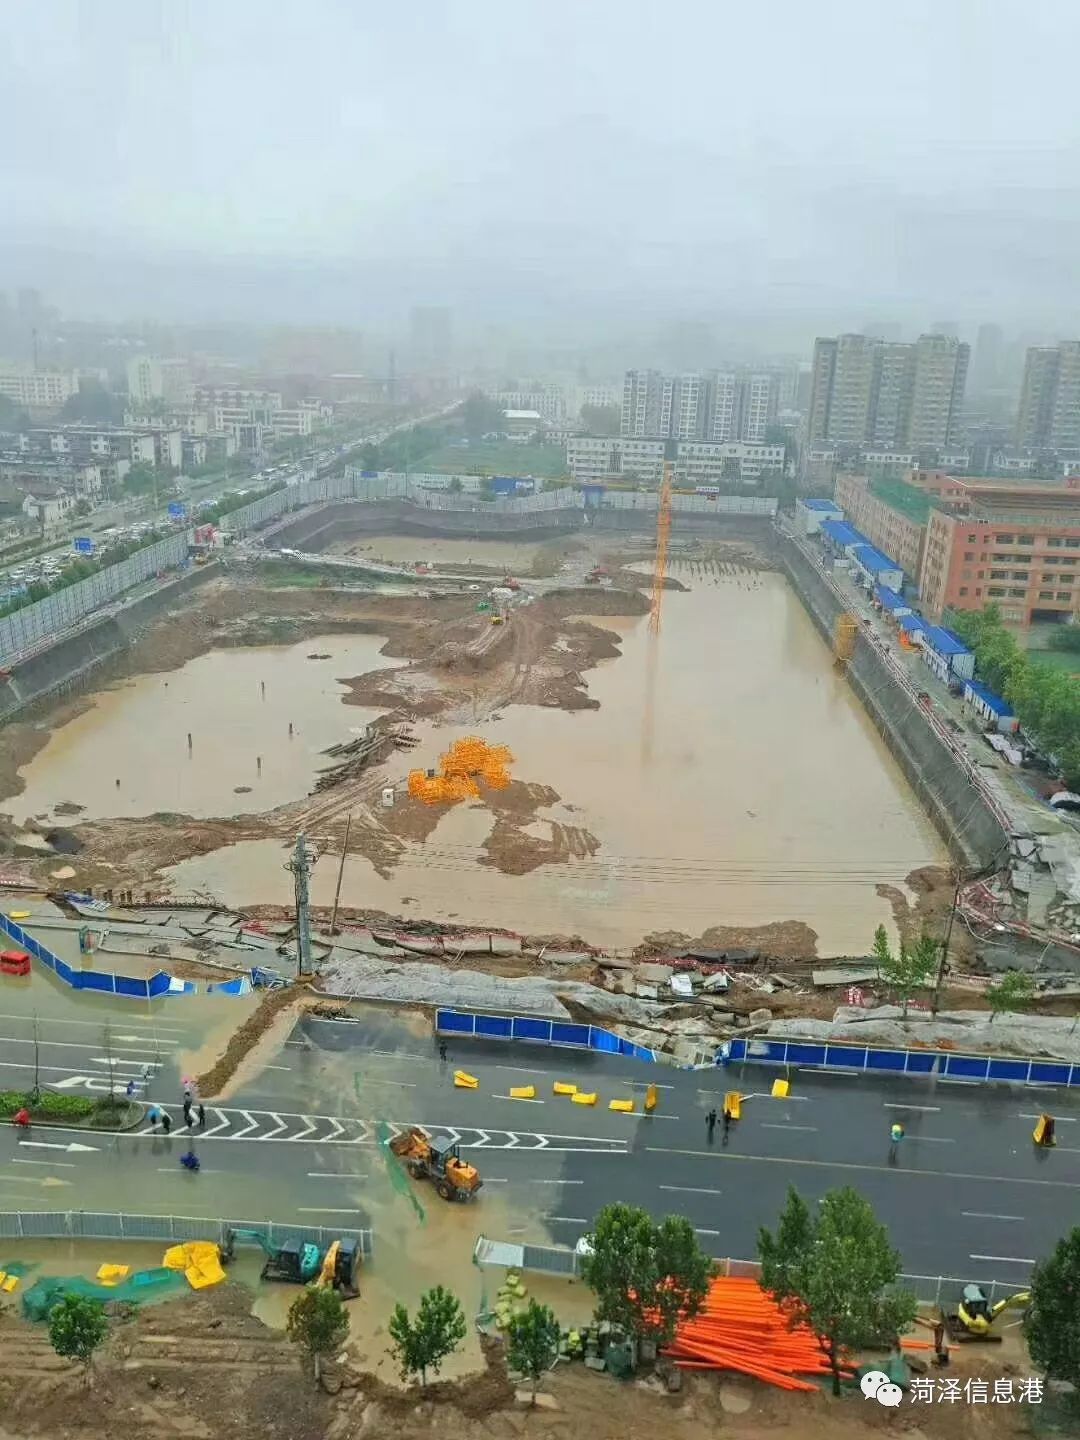 紧急通知:原菏泽西关体育场沿线的中华路,中和路部分路面塌陷,请市民